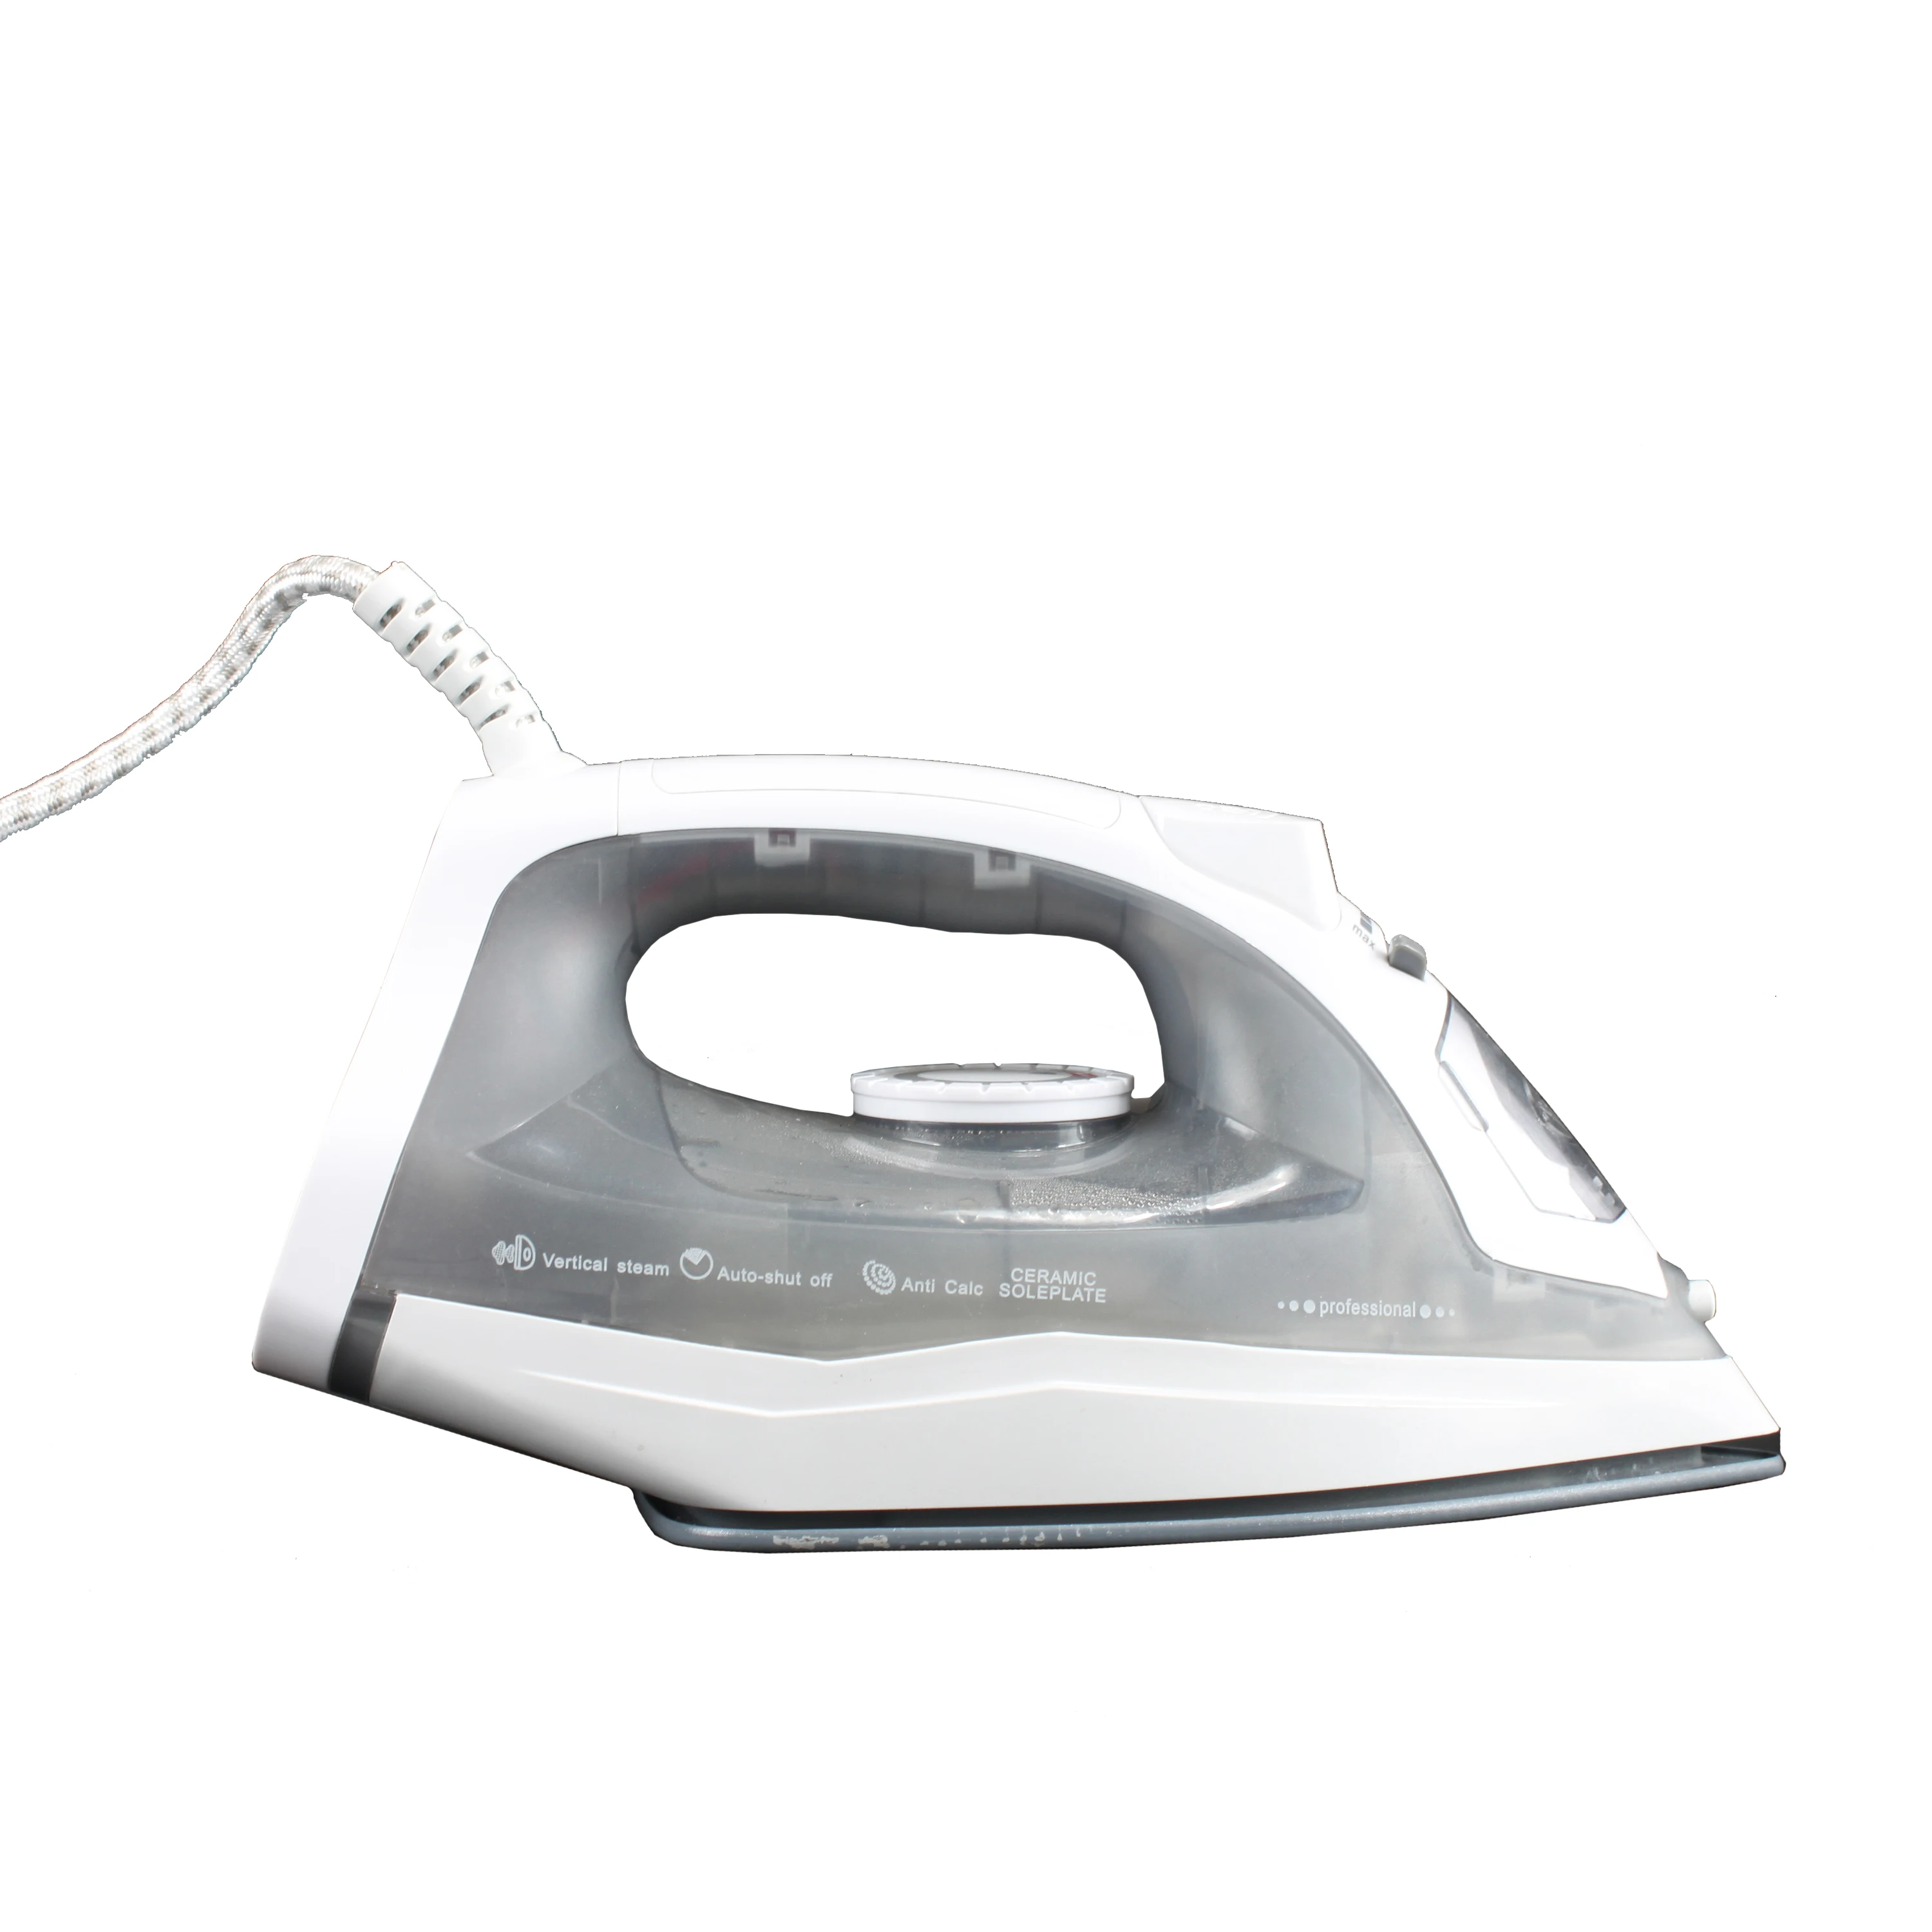 
Ironing certer, ironing, automatic clothe ironing machine (USIB-S01) 